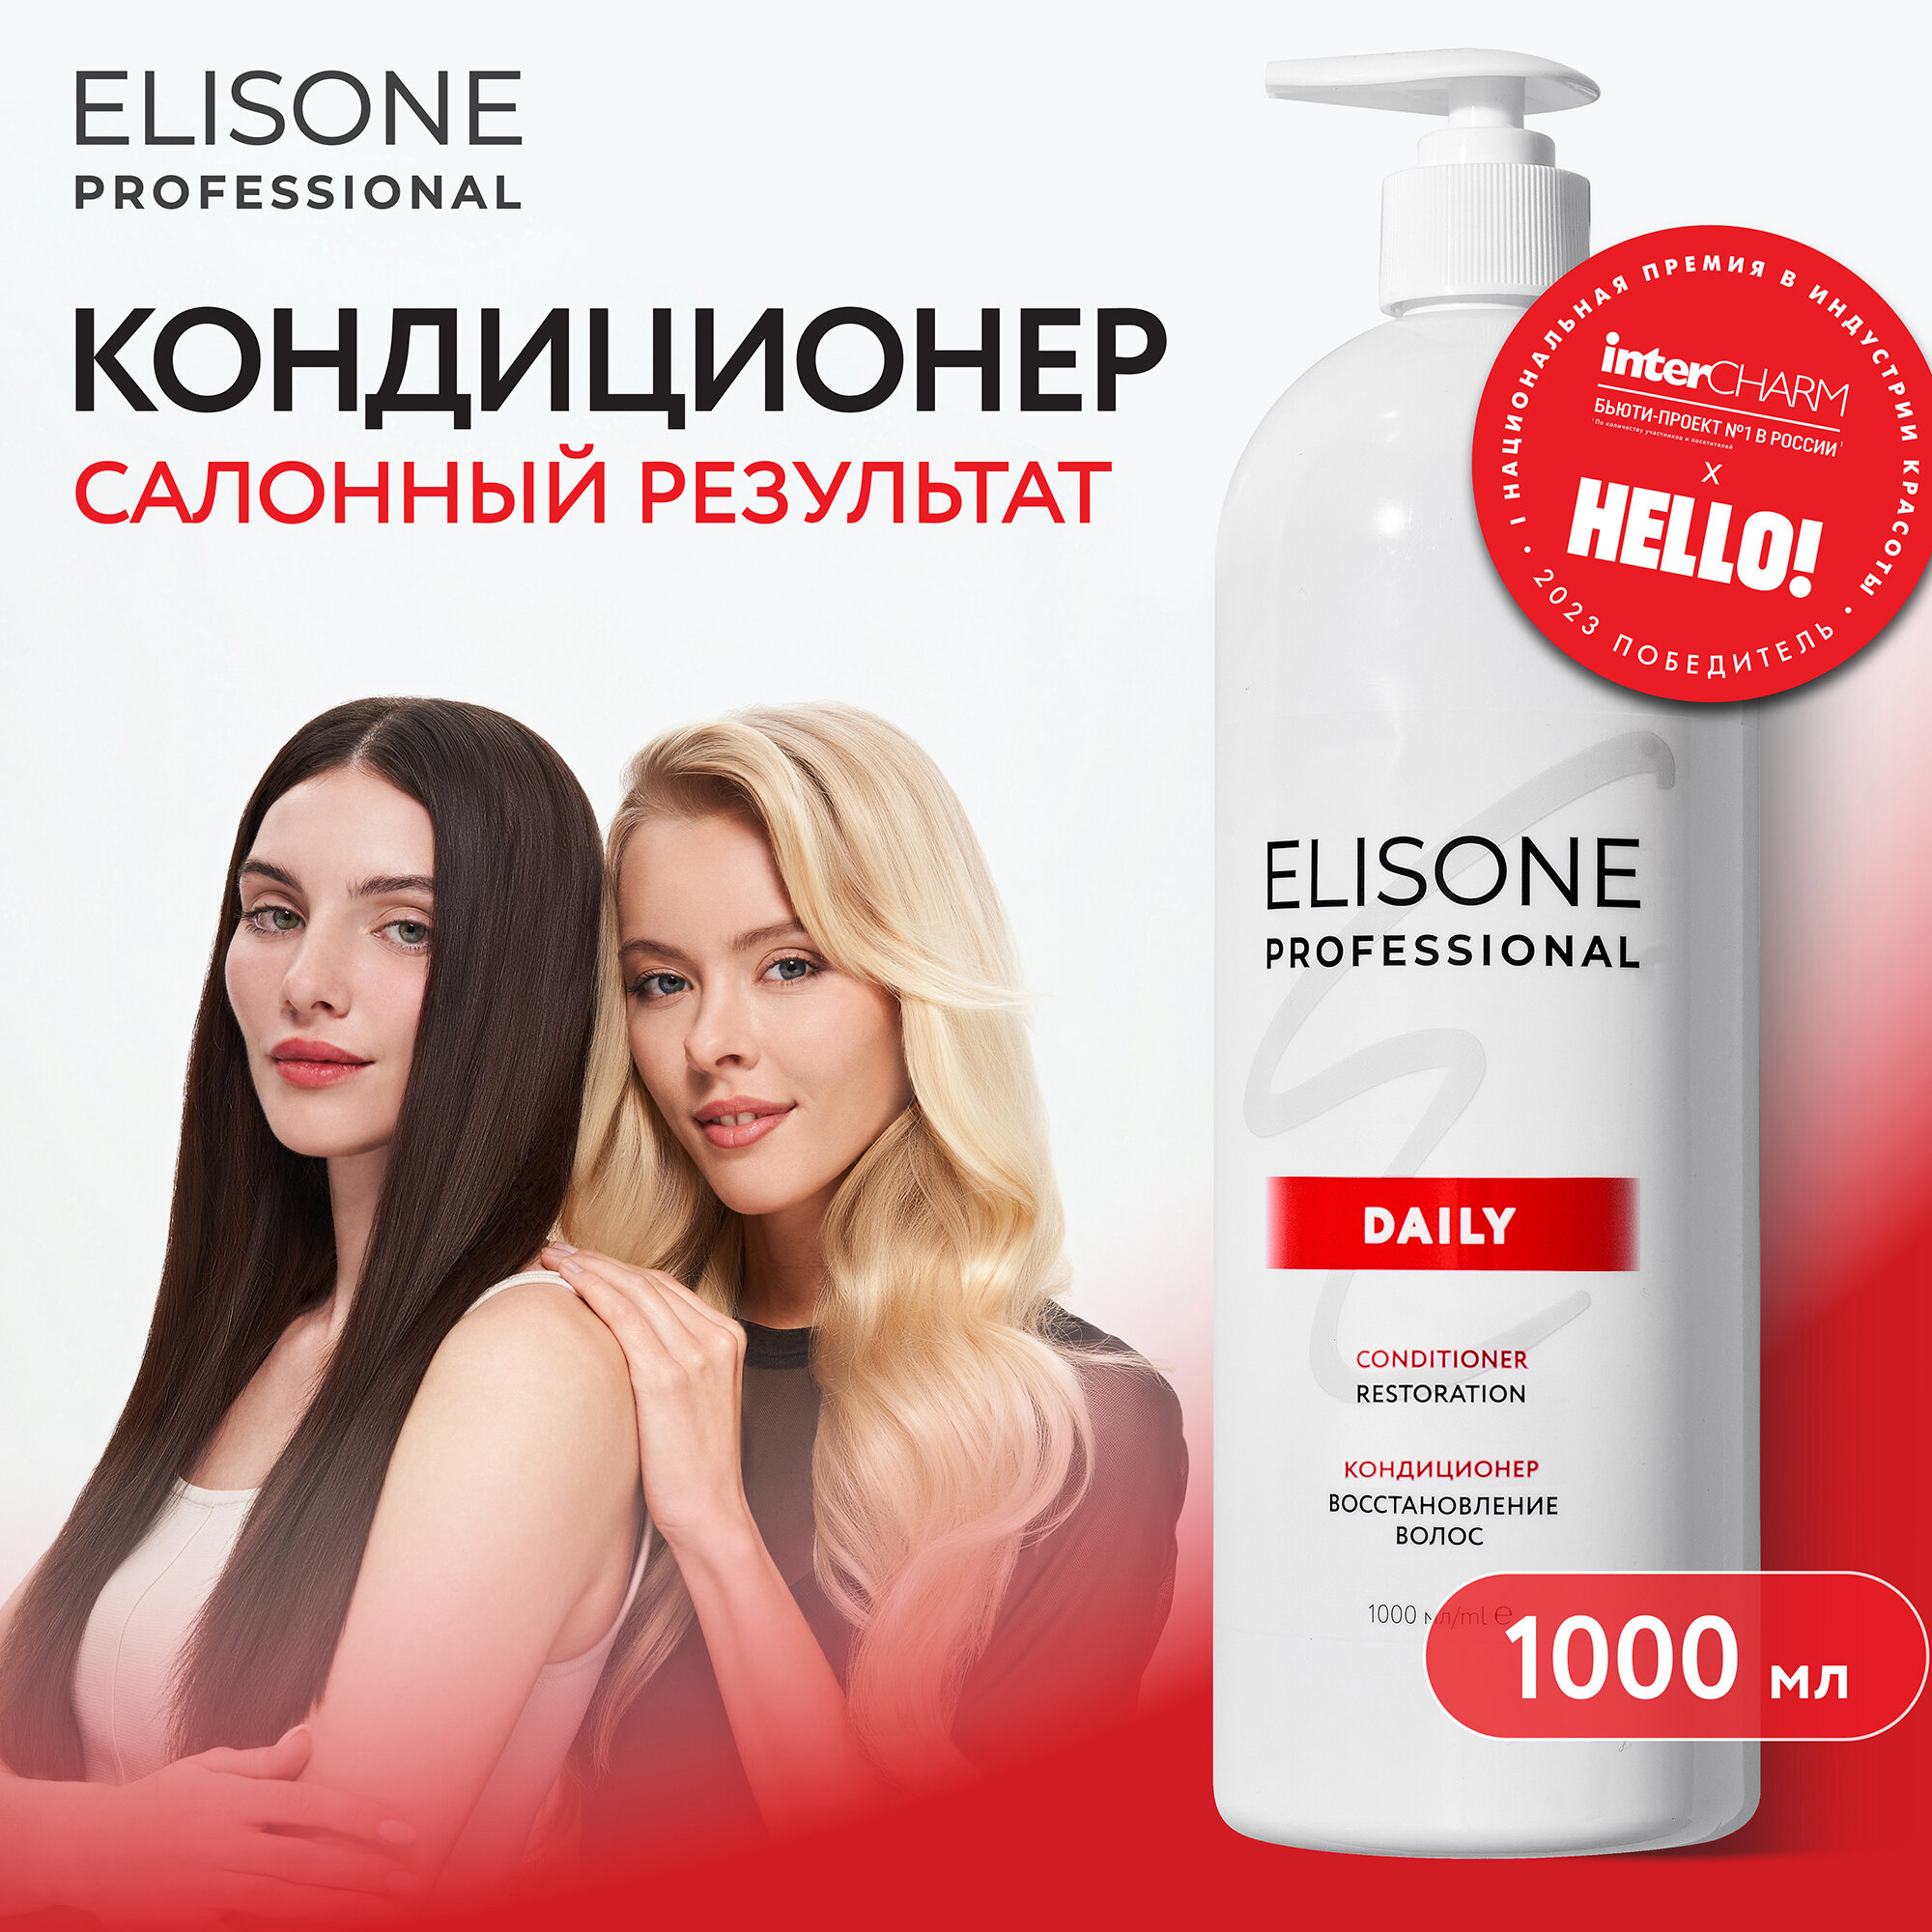 ELISONE PROFESSIONAL / Элисон / Кондиционер для волос профессиональный Daily Restoration Восстановление для поврежденных волос 1000 мл